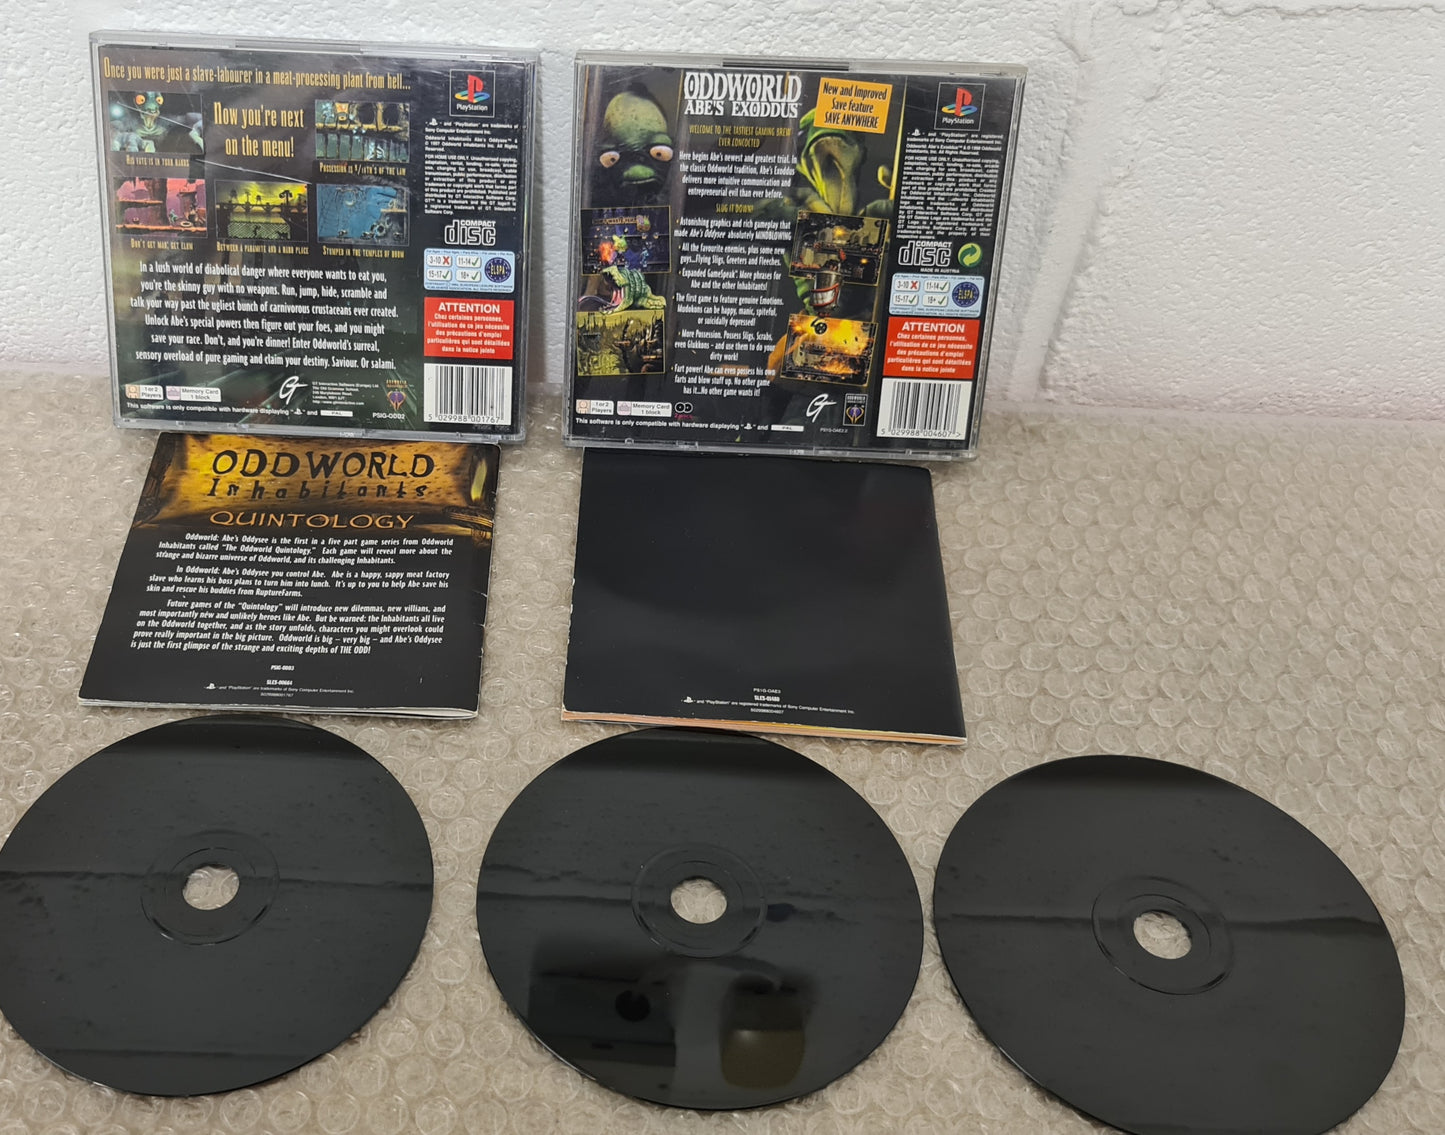 Oddworld Oddysee & Exoddus Sony Playstation 1 (PS1) Game Bundle